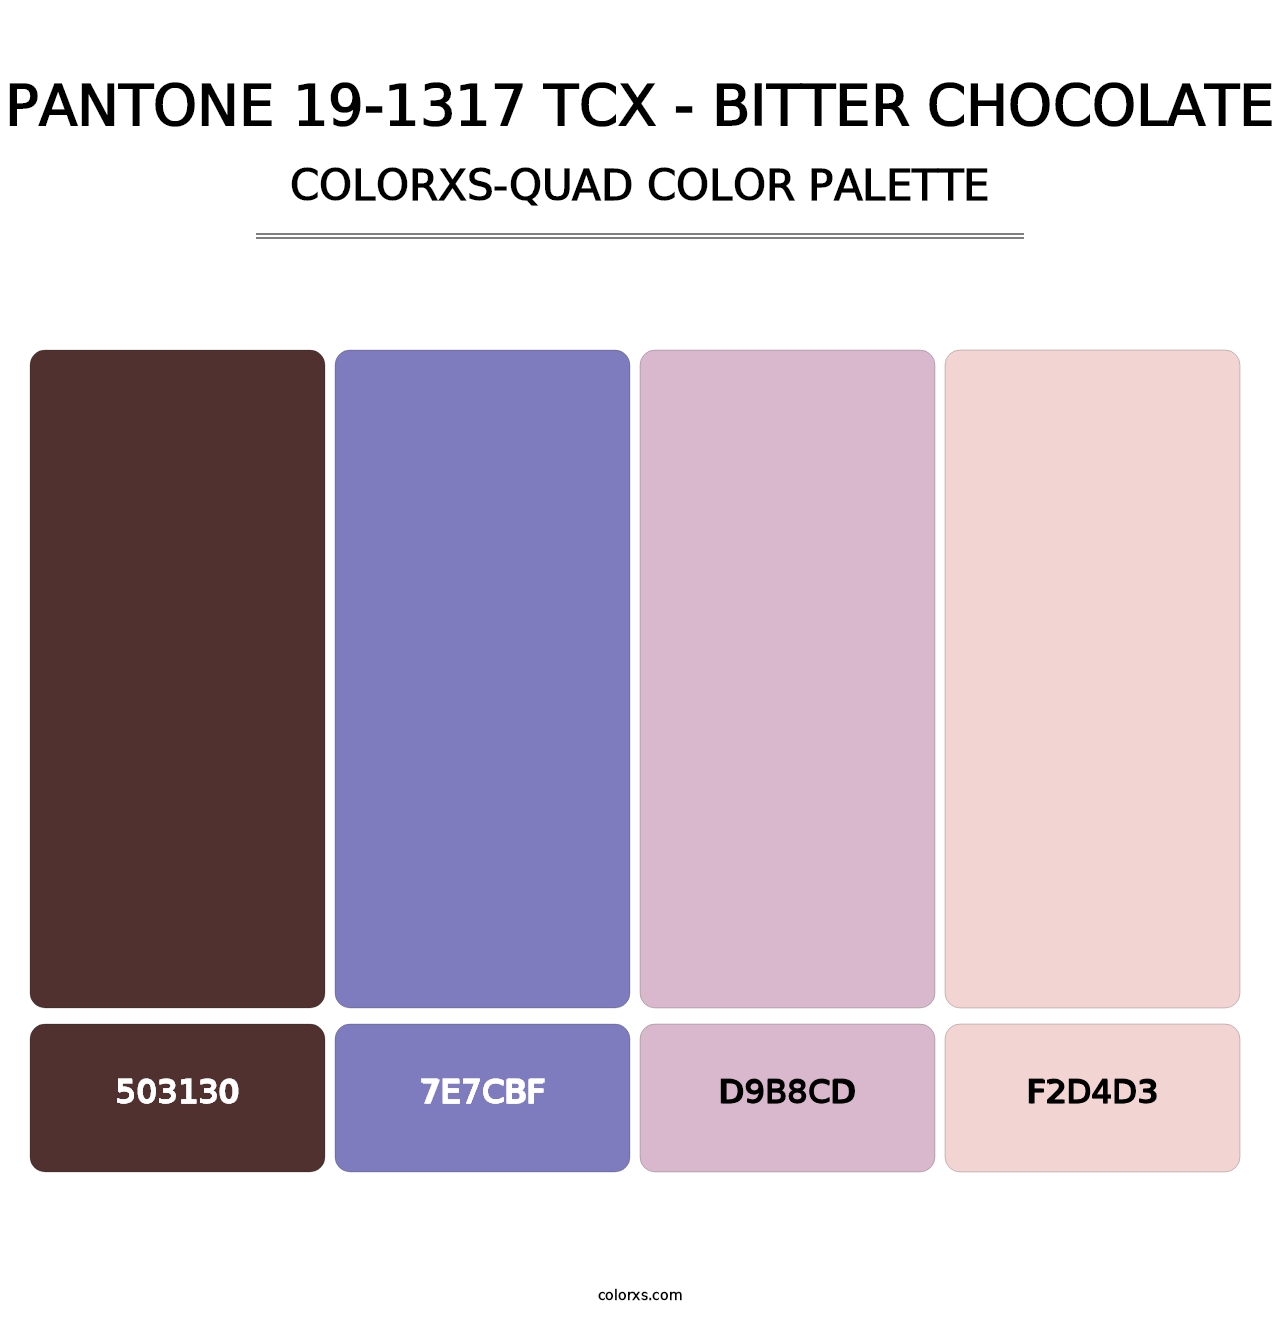 PANTONE 19-1317 TCX - Bitter Chocolate - Colorxs Quad Palette